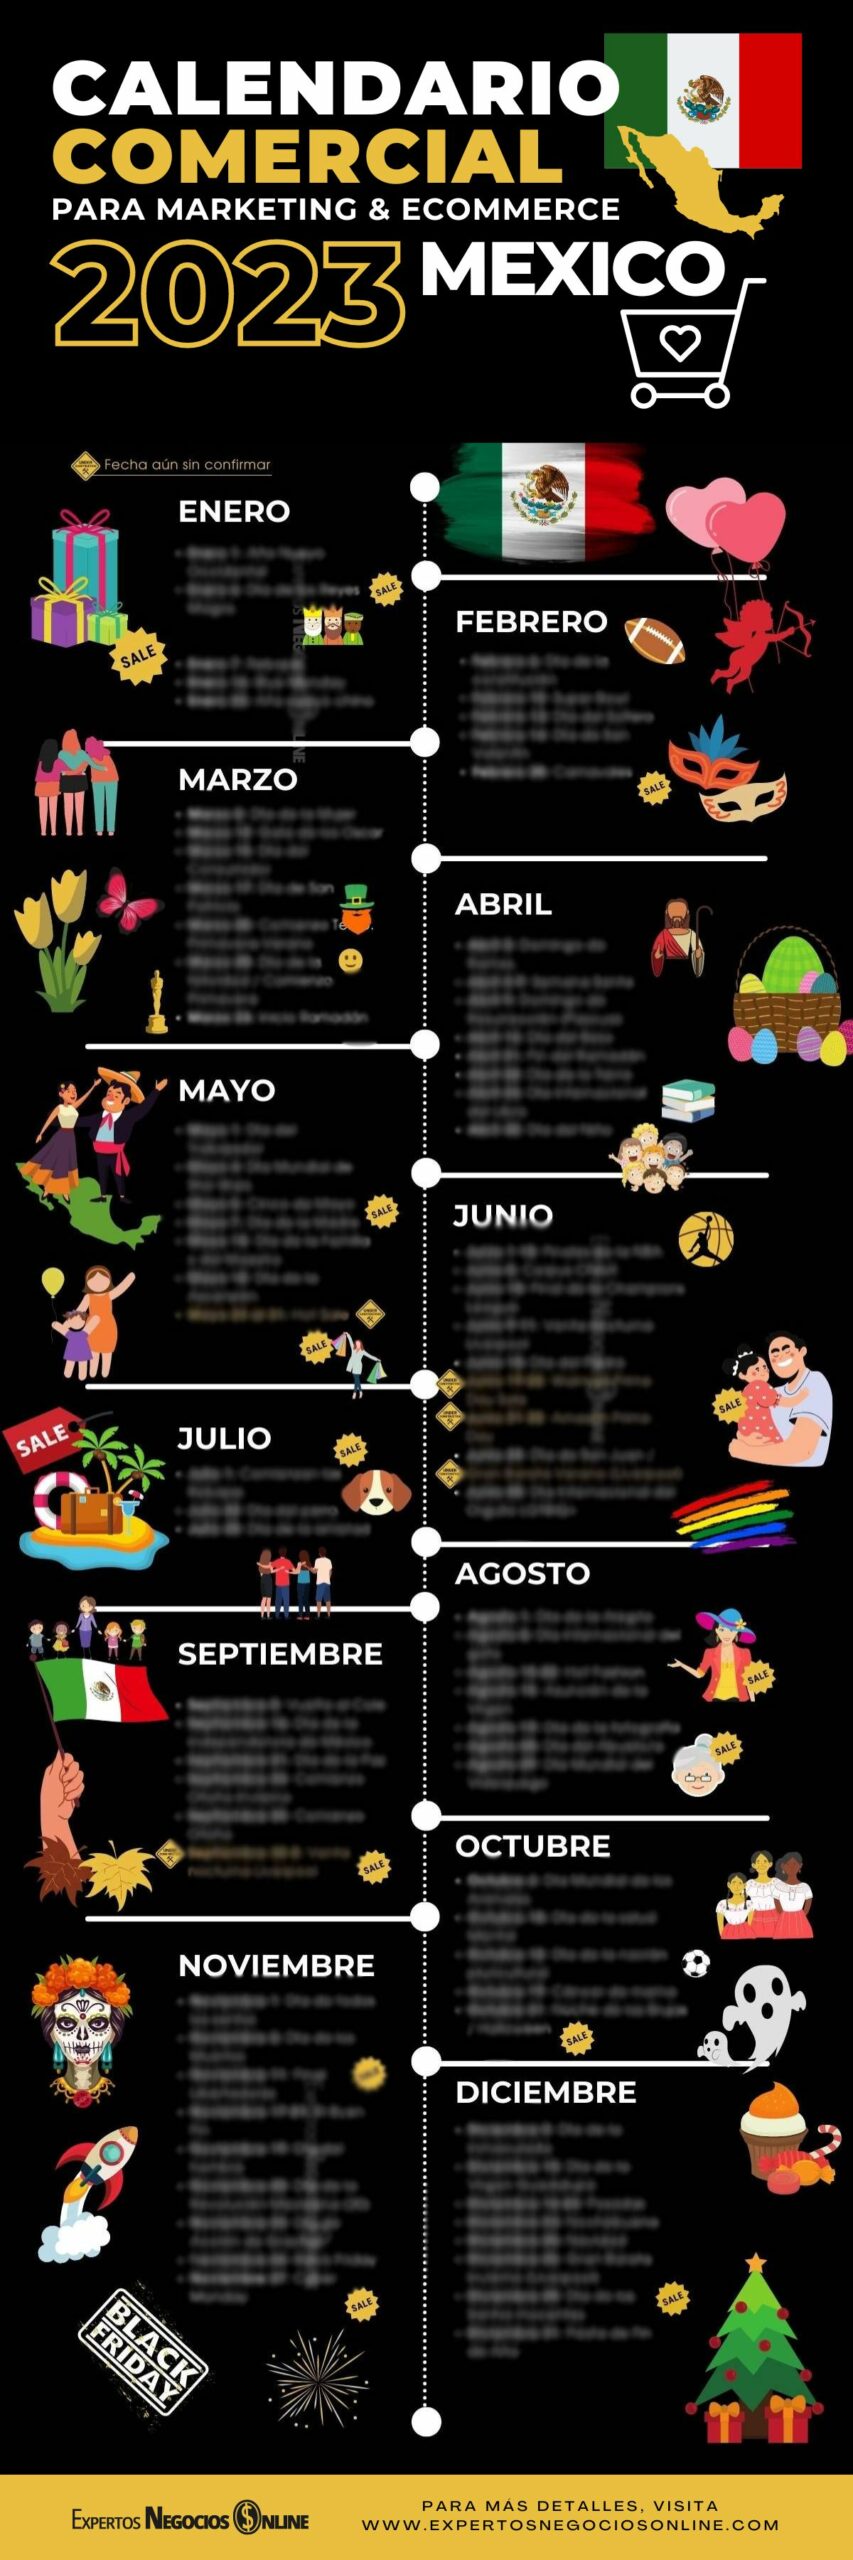 Calendario marketing México 2023 promociones & social media